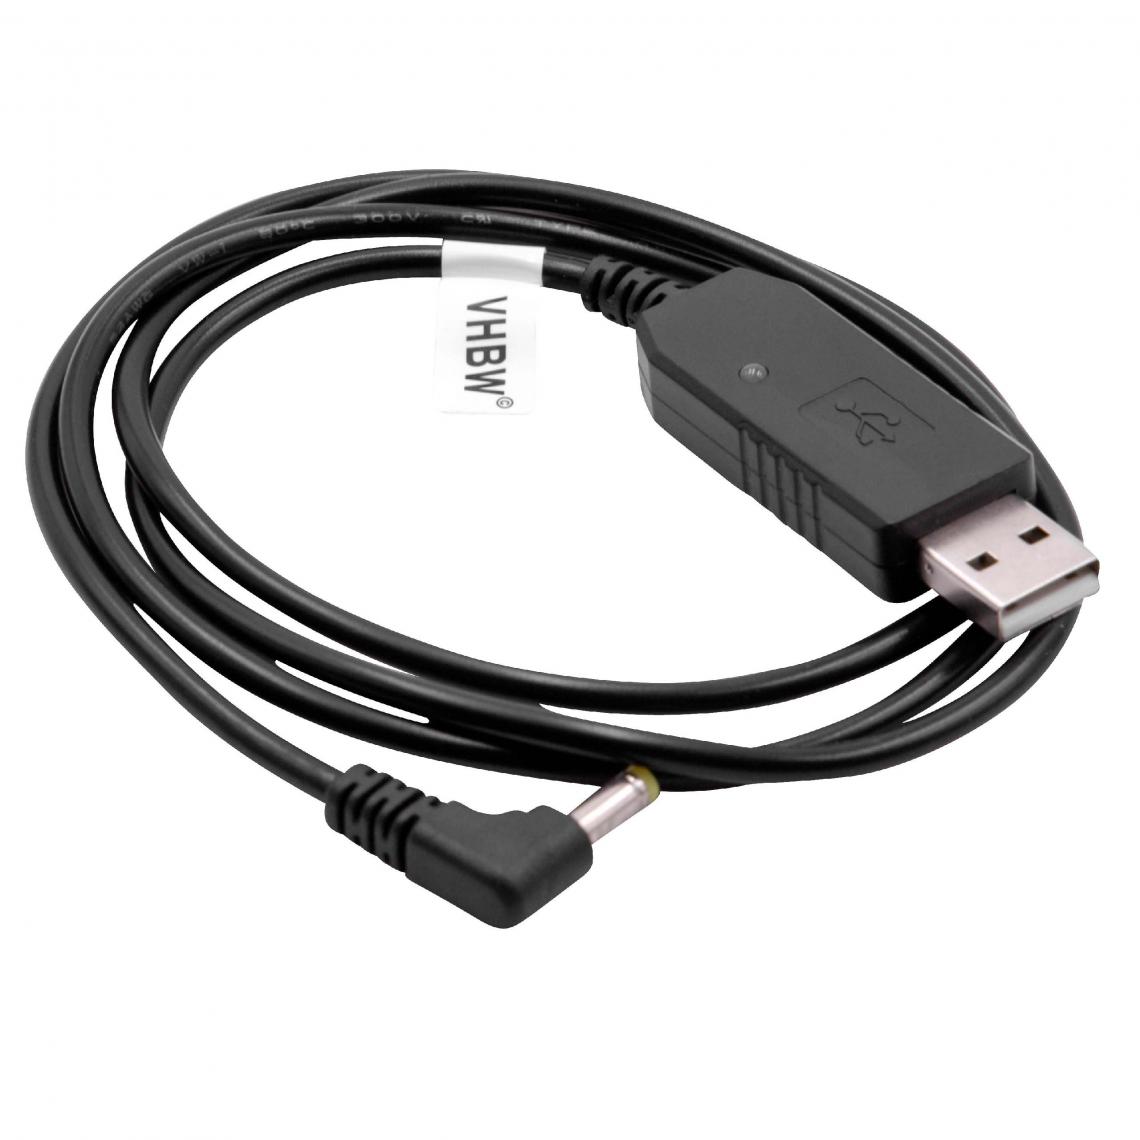 Vhbw - vhbw câble de chargement USB compatible avec Baofeng CT-3, UV-5R, UV-5RA radio, batterie - Chargeur, 93 cm, avec témoin lumineux - Autres accessoires smartphone